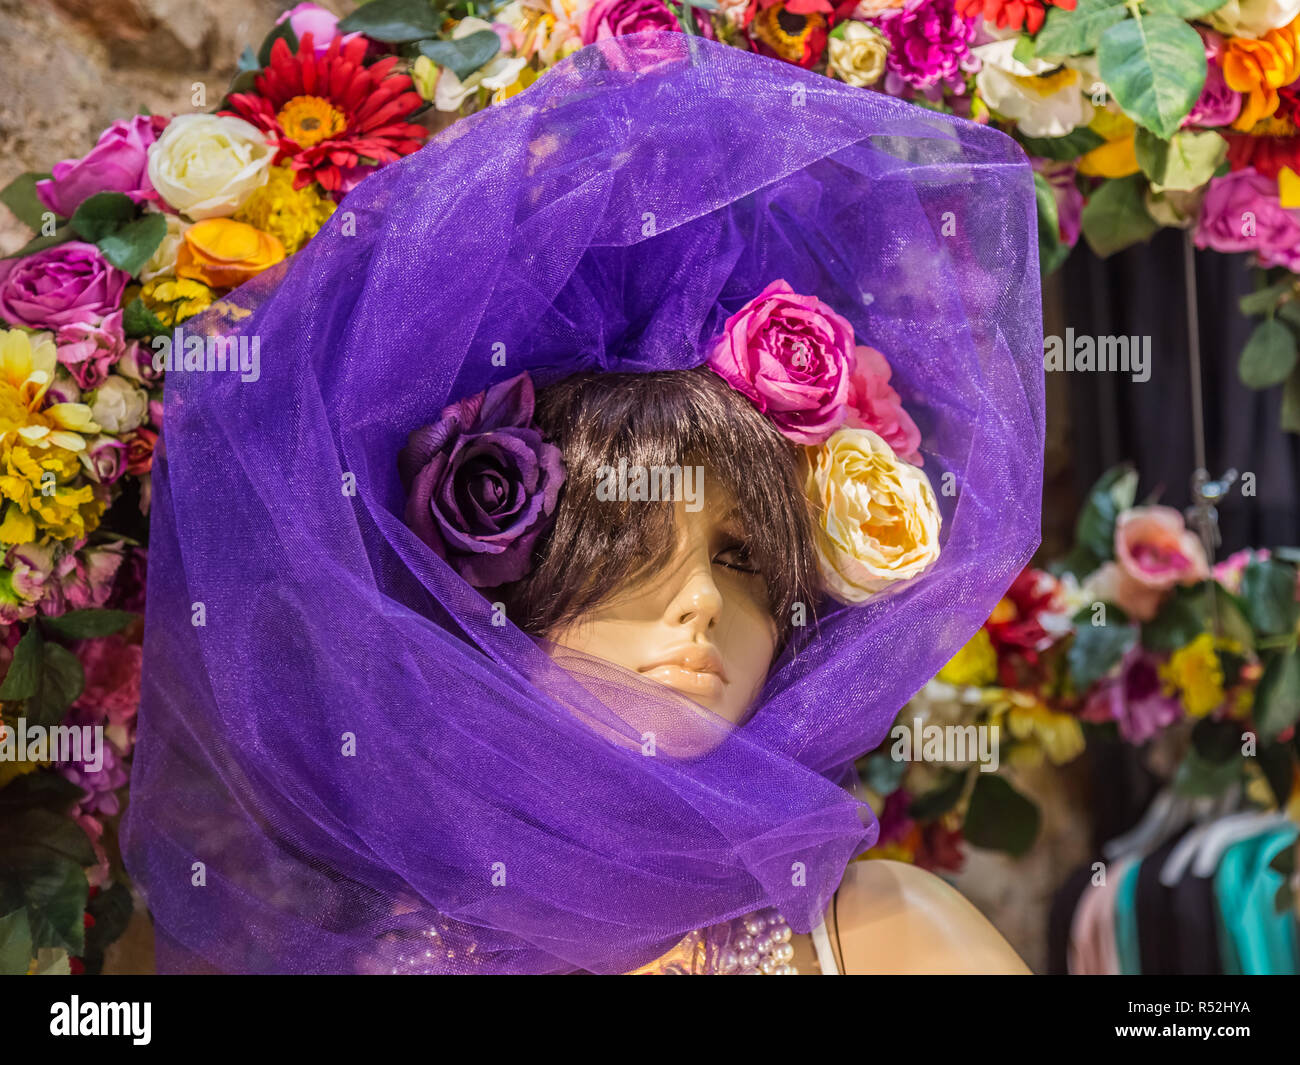 Istanbul, Turquie, 17 juin 2014 : Modèle dans une vitrine portant un foulard mauve et fleurs. Banque D'Images